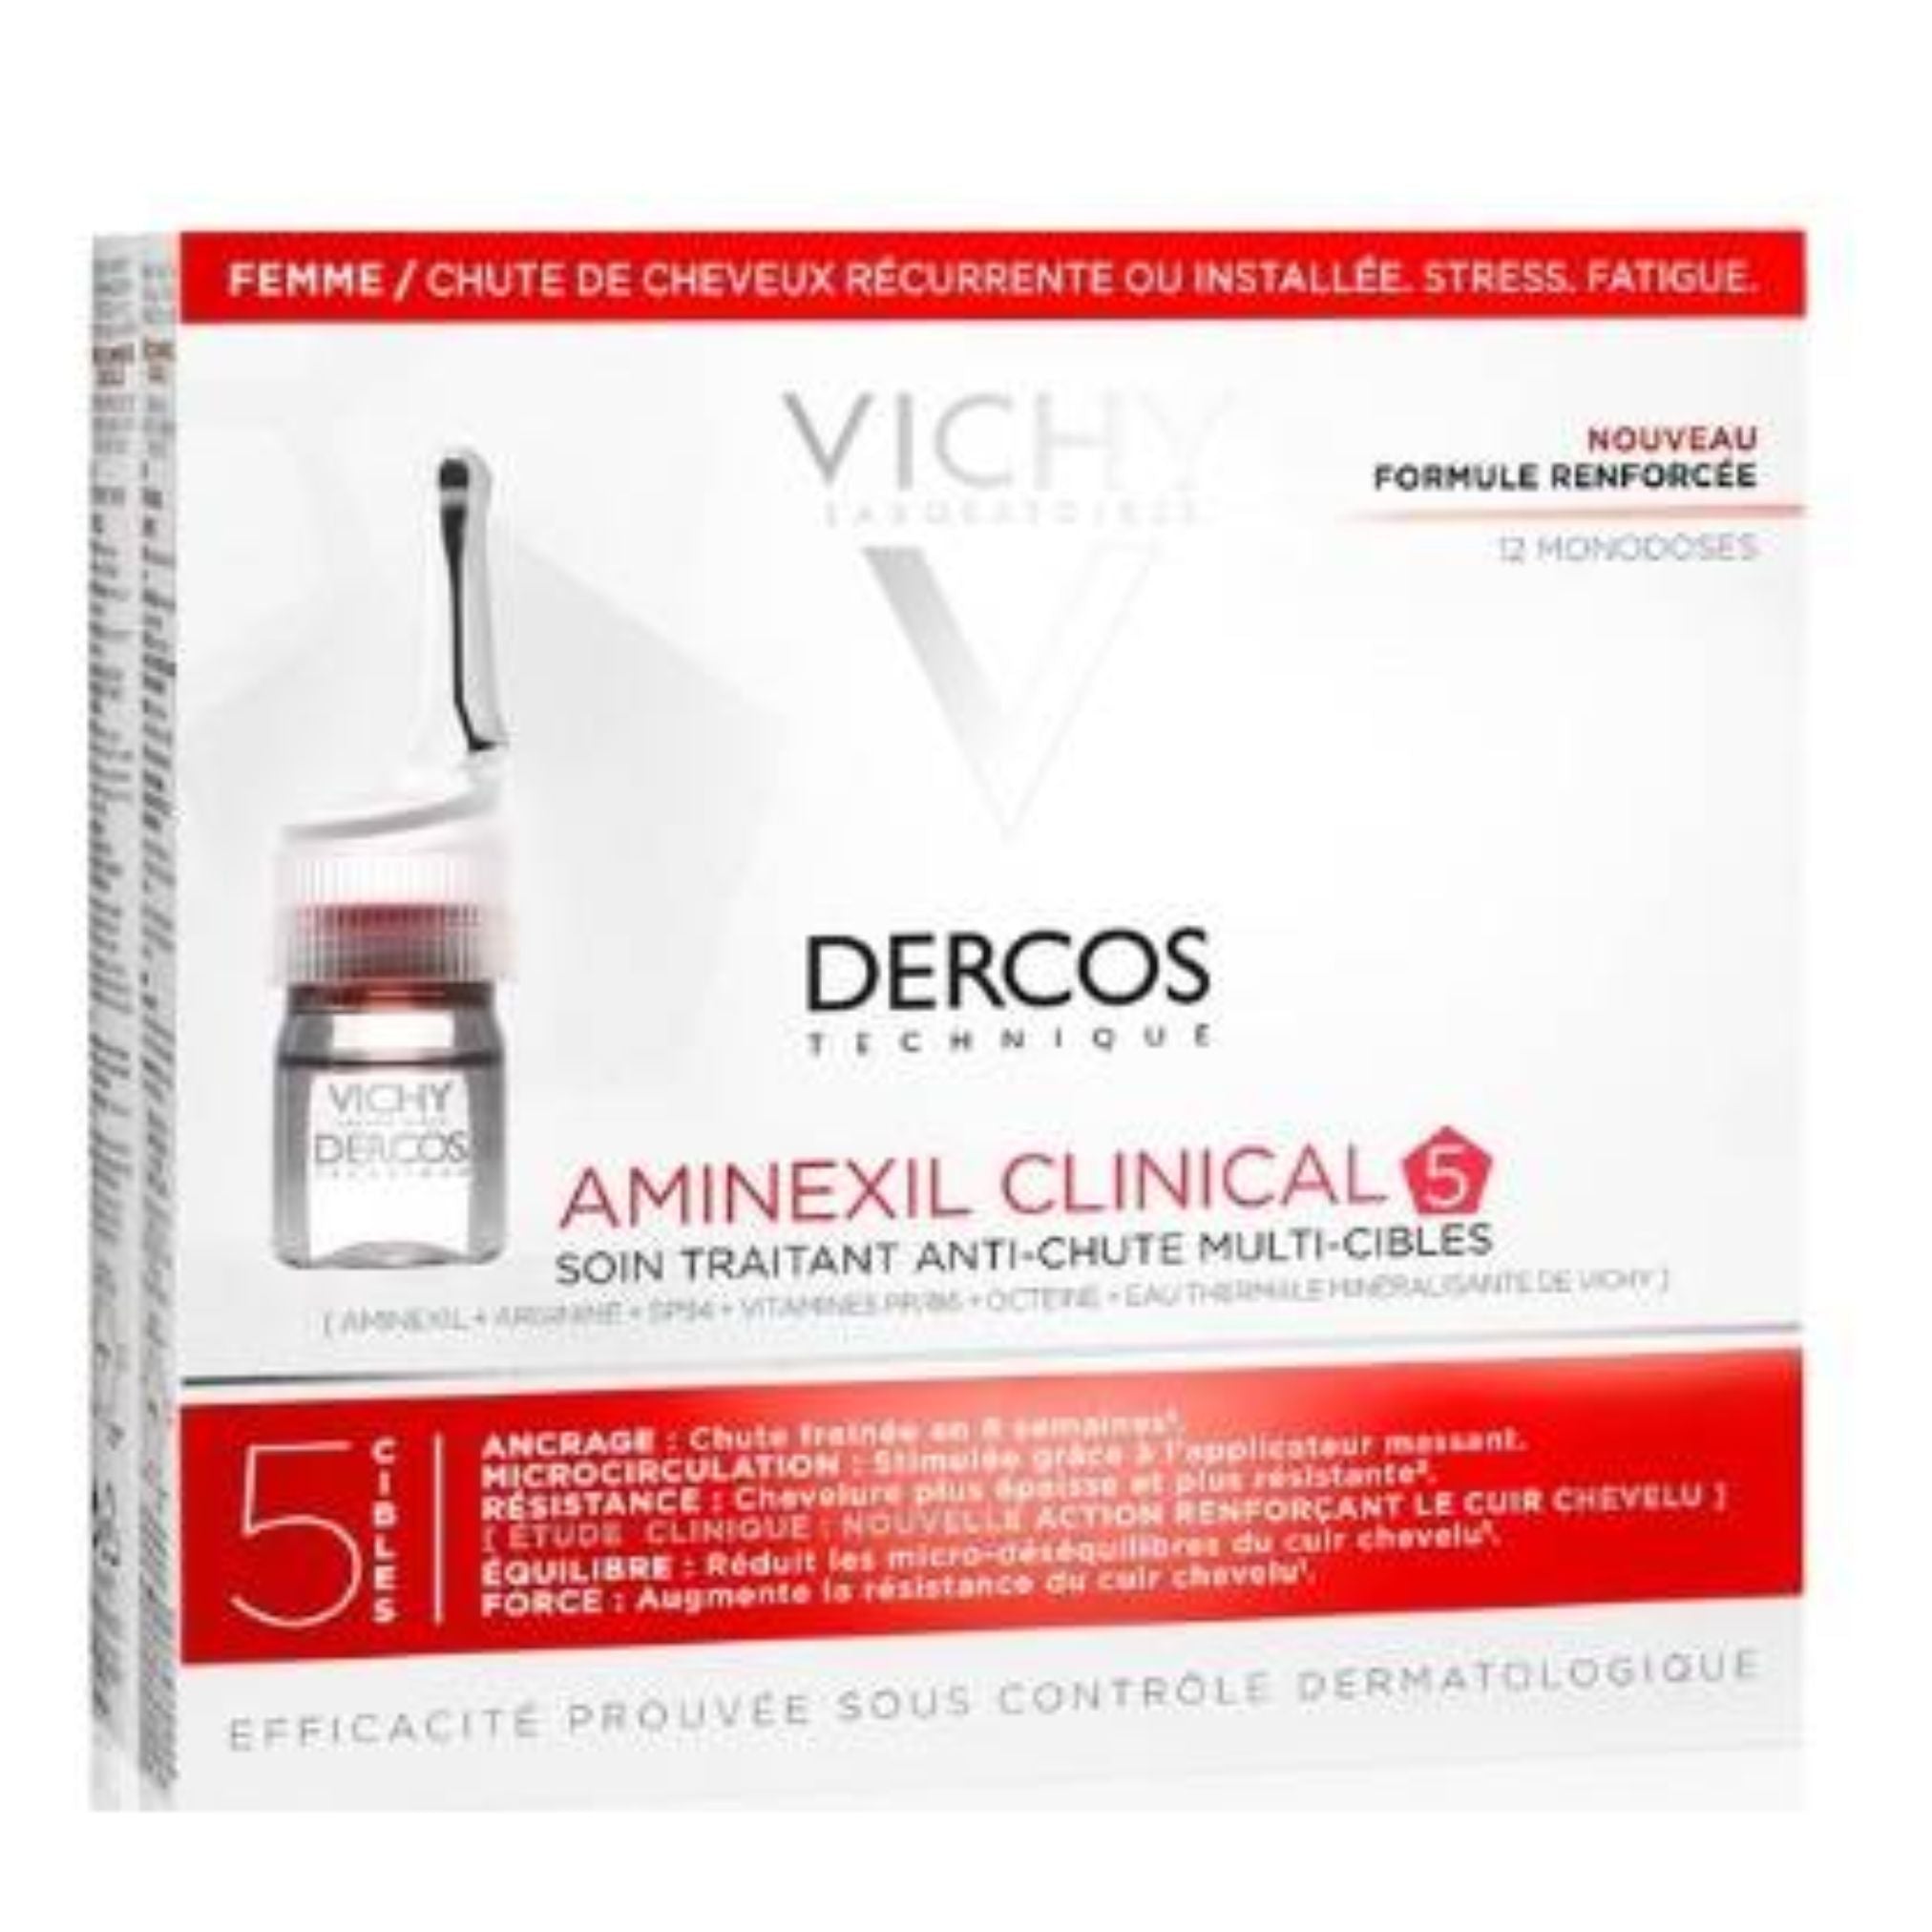 Vichy Dercos Technique Aminexil Clinical 5 Targets Women Ampoules x12